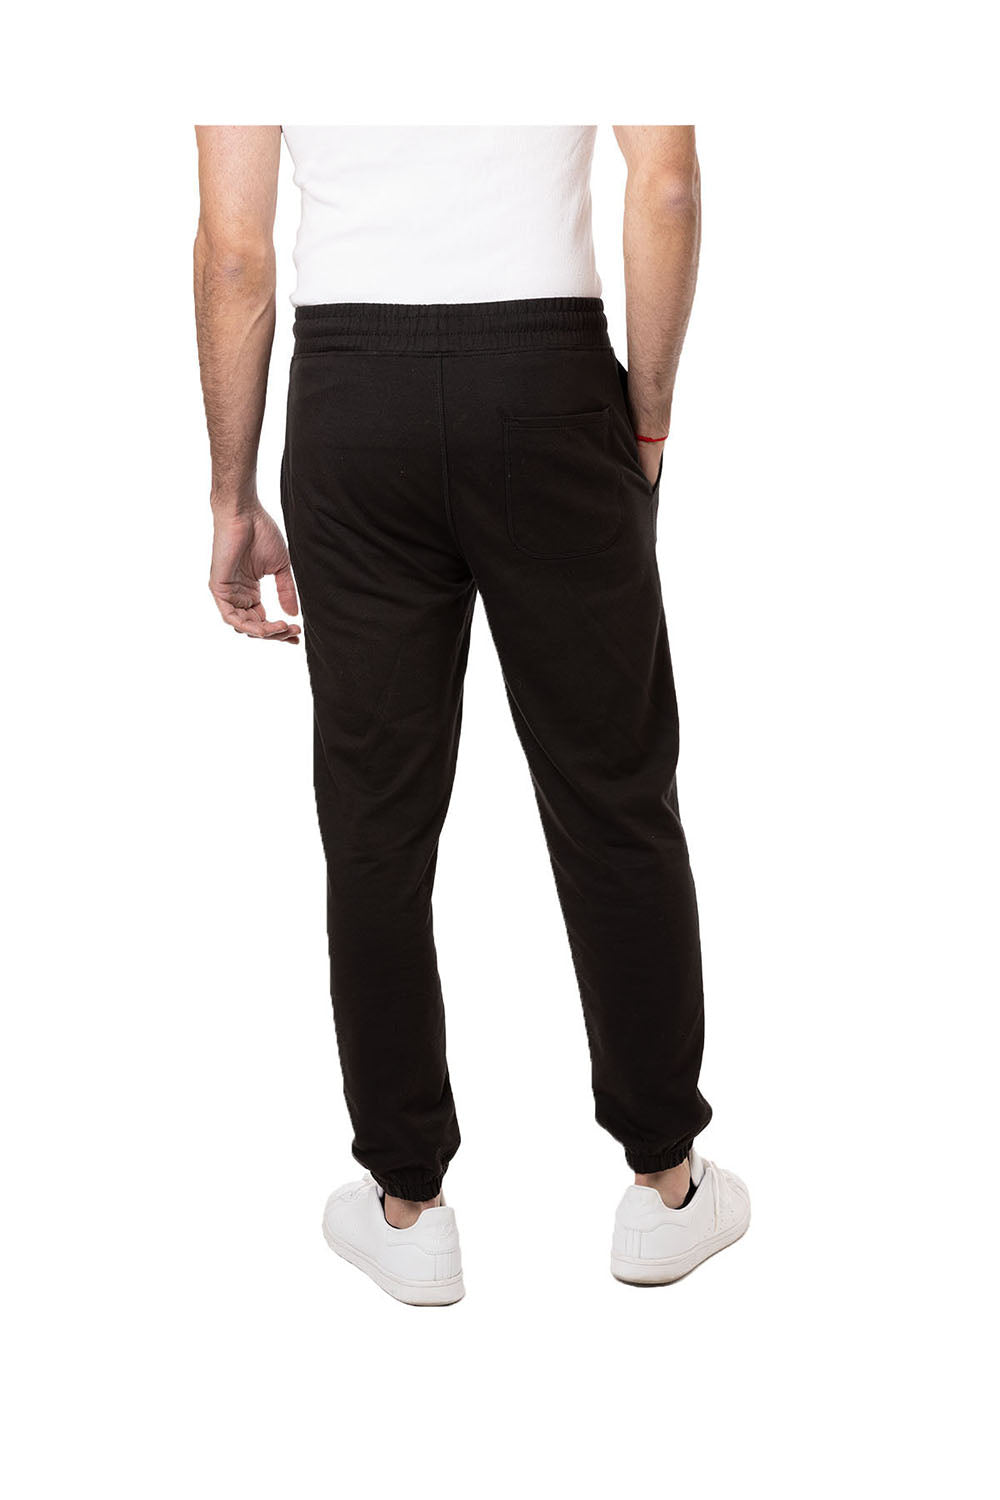 Econscious EC5400 Mens Motion Jogger Sweatpants w/ Pockets Black Back